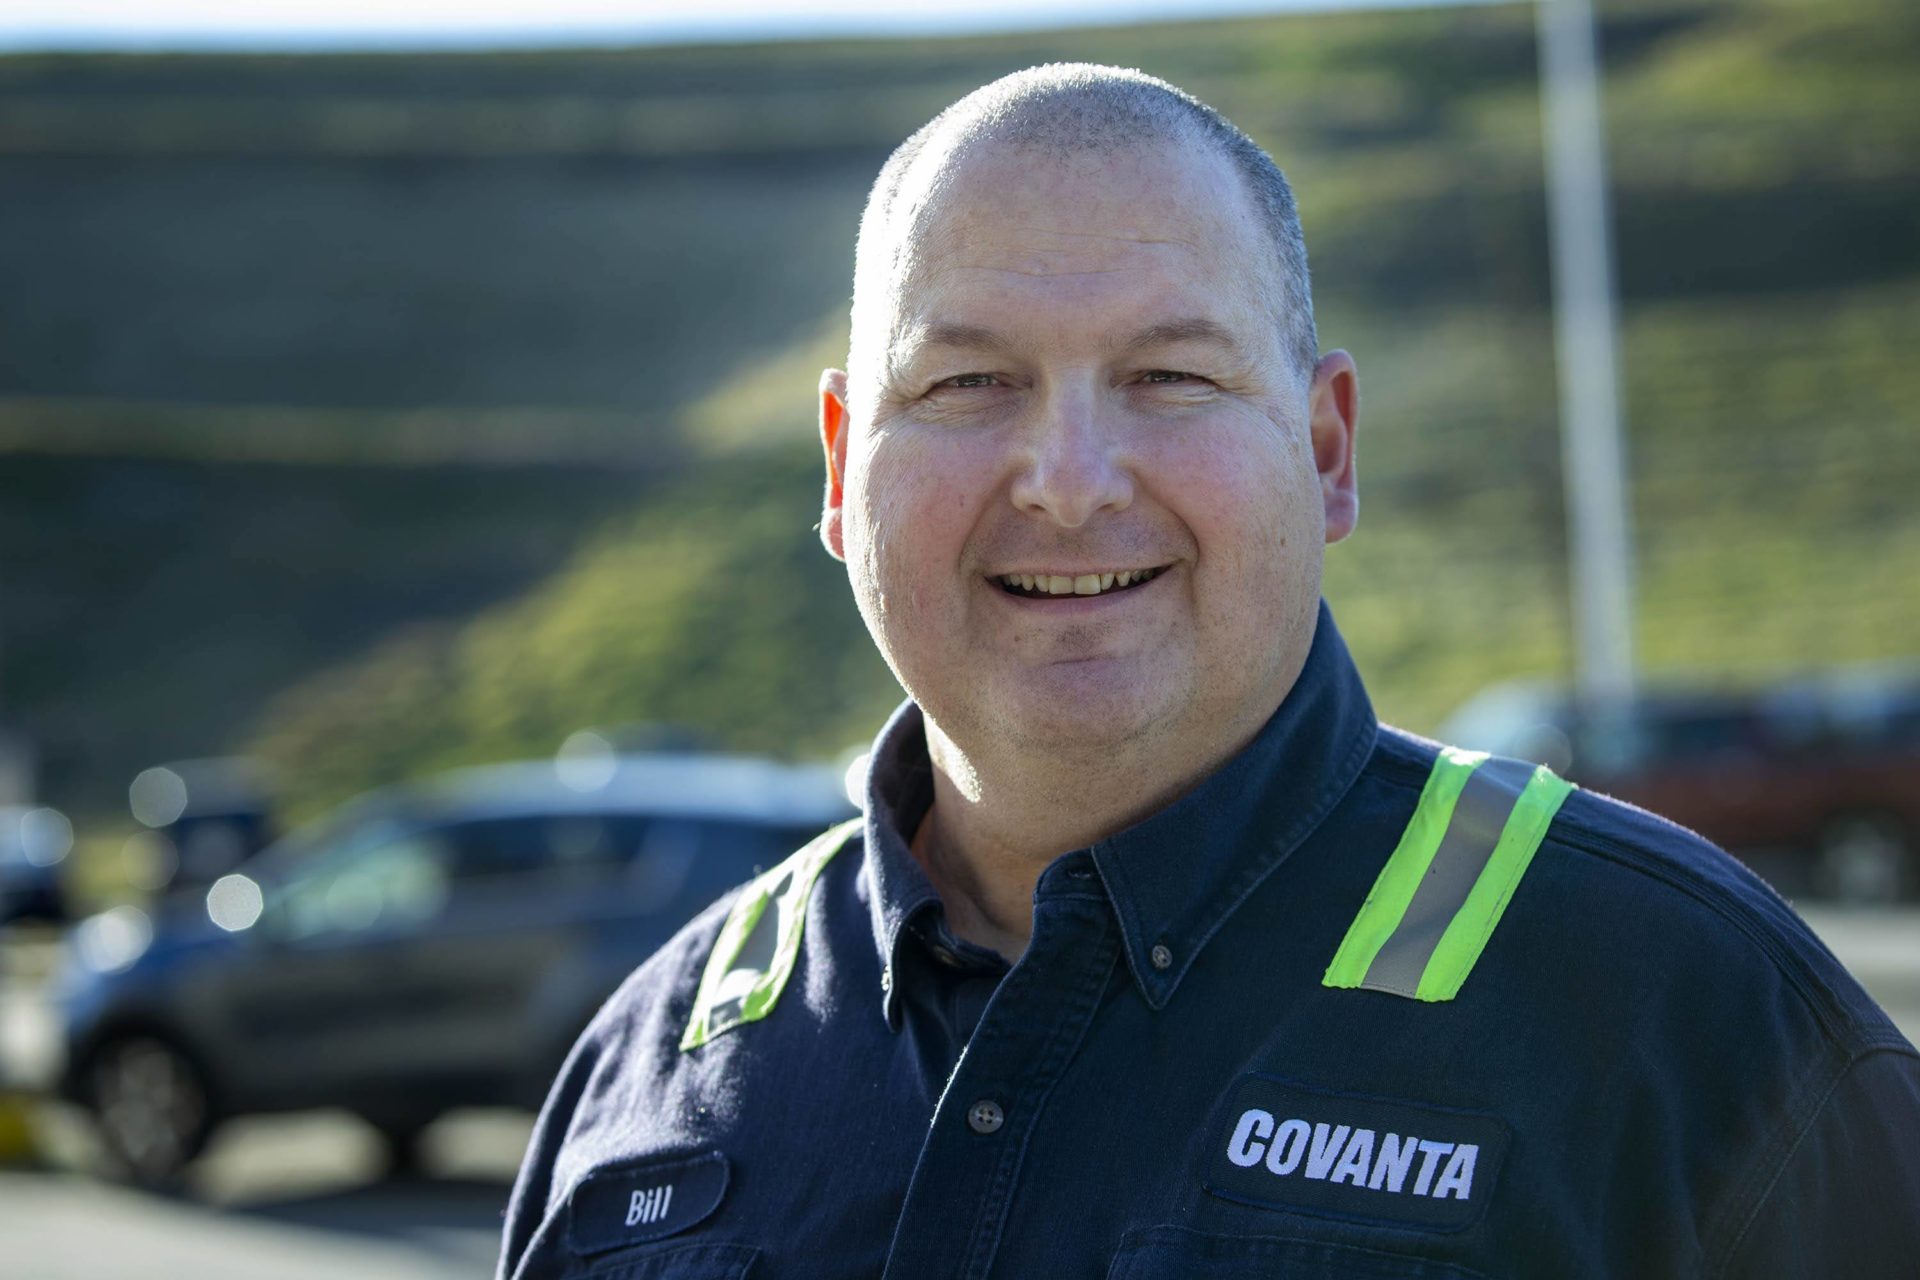 Bill Zaneski, facility manager of Covanta's Haverhill site. (Robin Lubbock/WBUR)